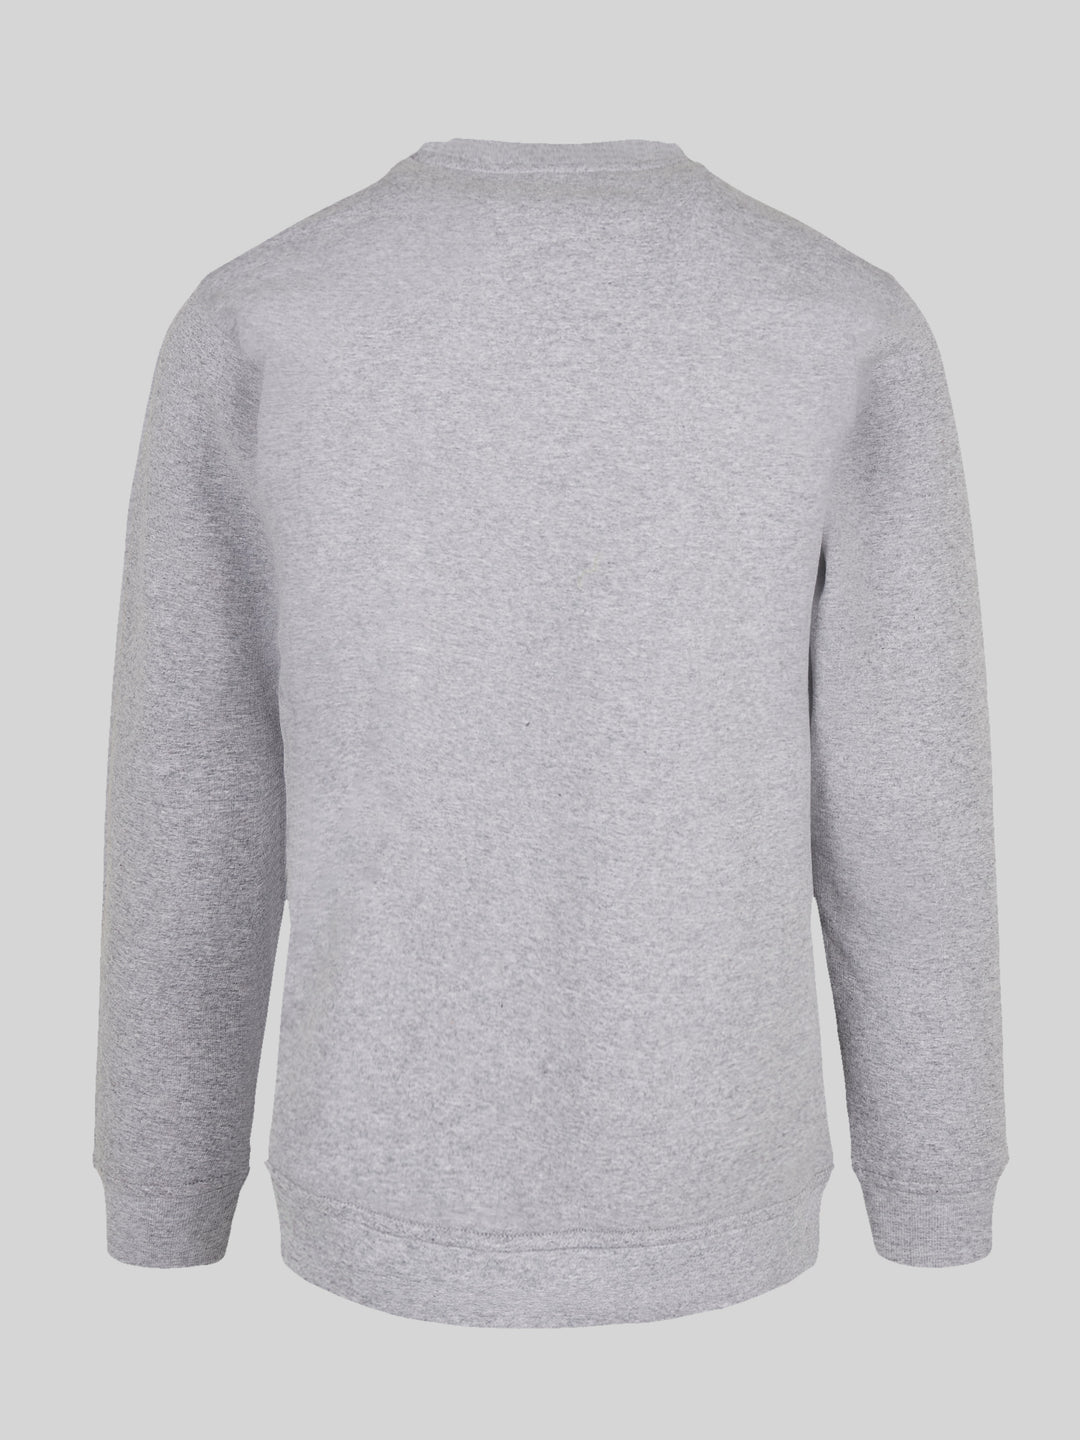 PIET | Sweatshirt Pullover Herren Ahoi Anker Crop